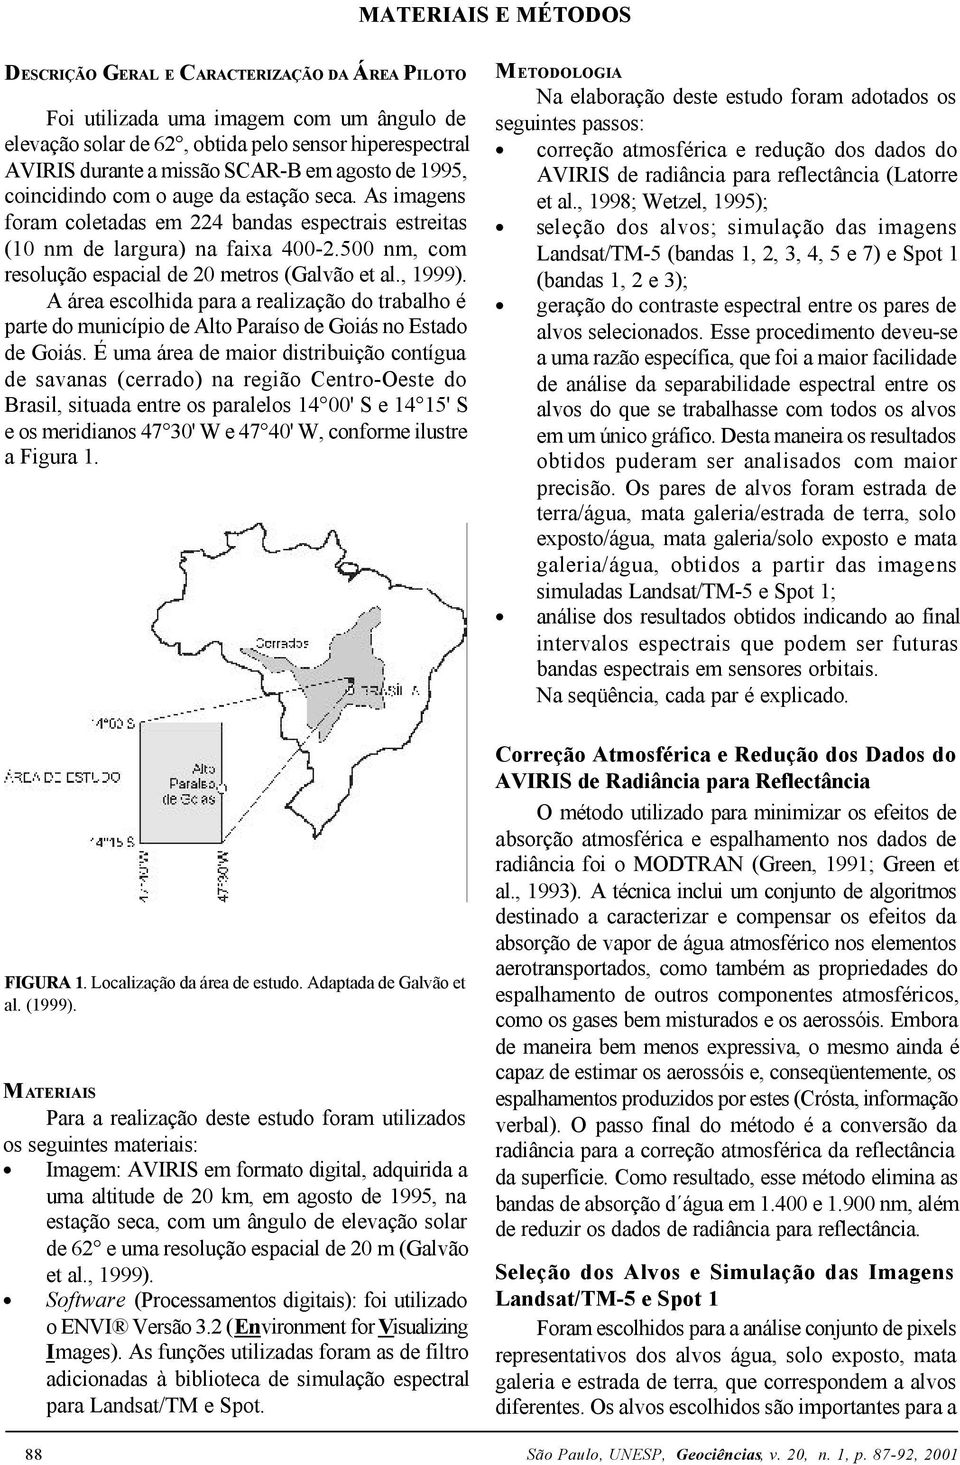 500 nm, com resolução espacial de 20 metros (Galvão et al., 1999). A área escolhida para a realização do trabalho é parte do município de Alto Paraíso de Goiás no Estado de Goiás.